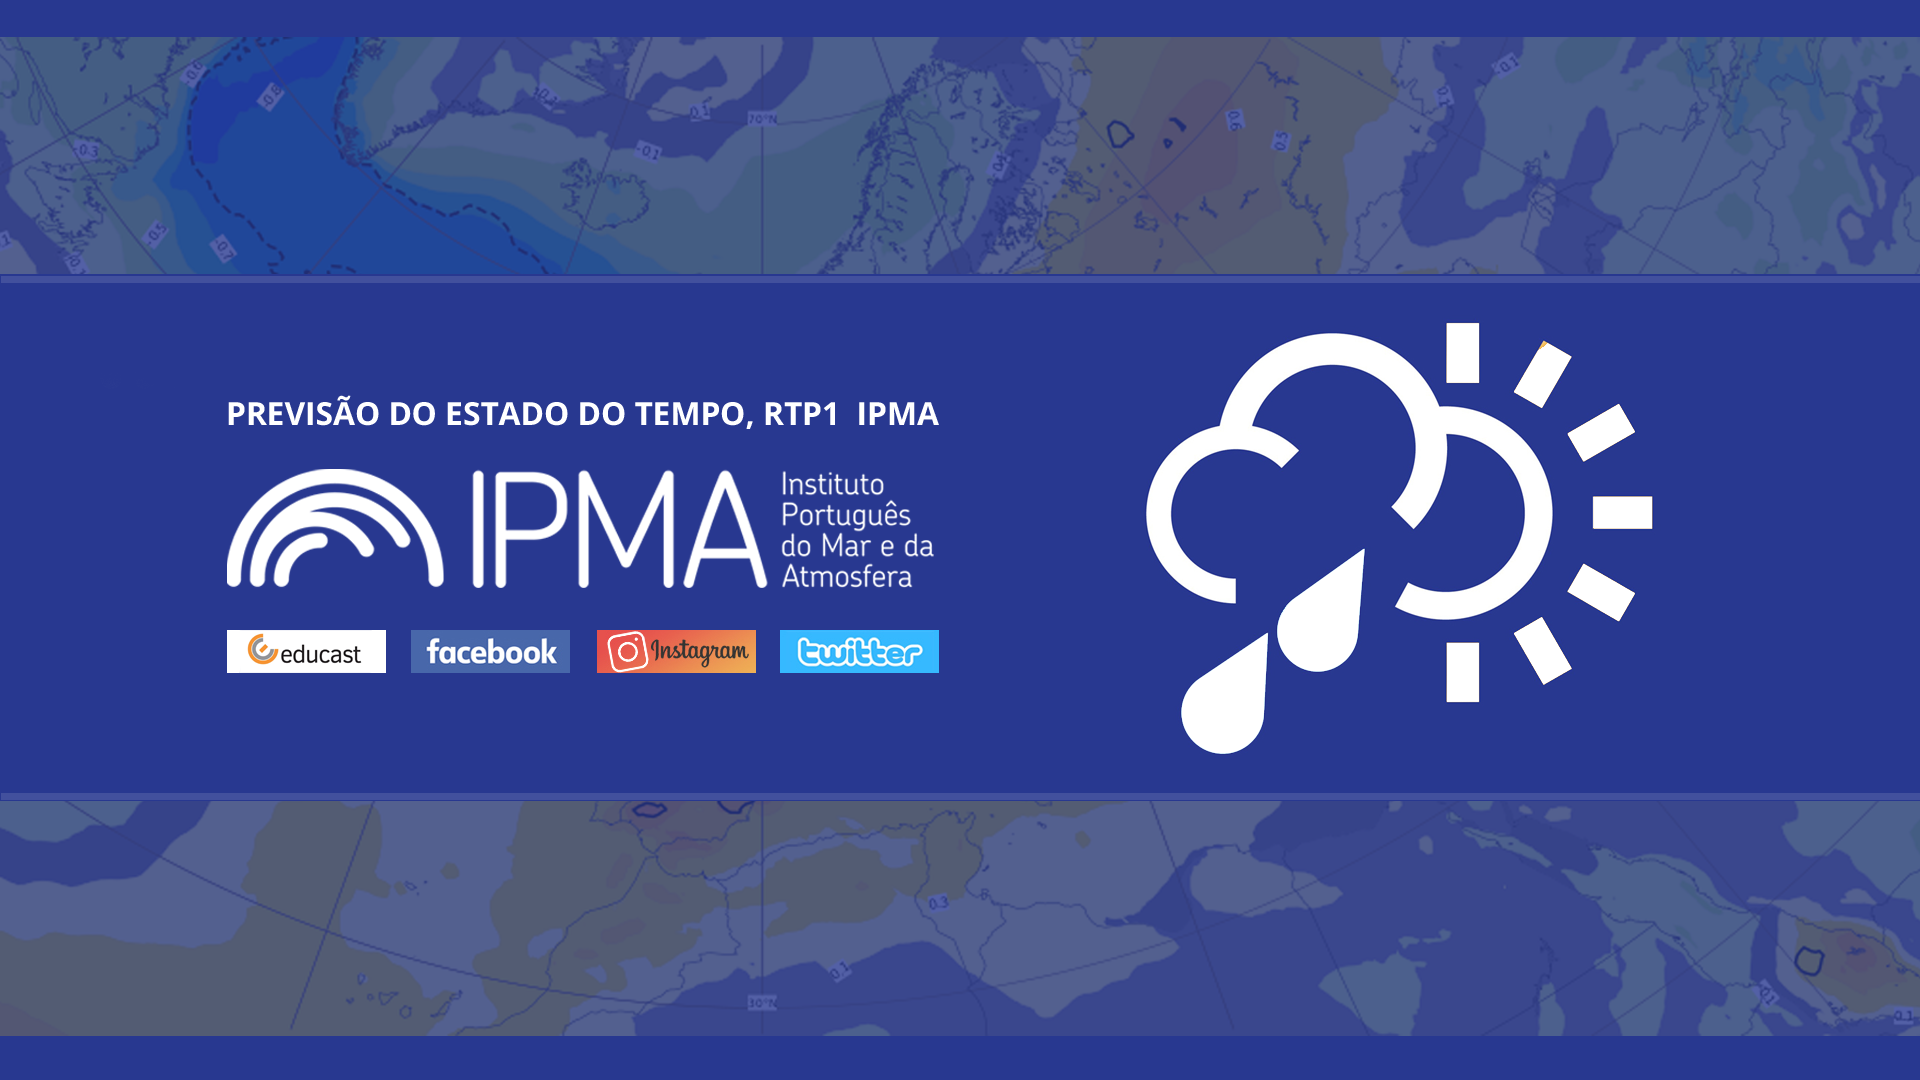  Previsão do estado do tempo, RTP1, 21-02-2022, IPMA.